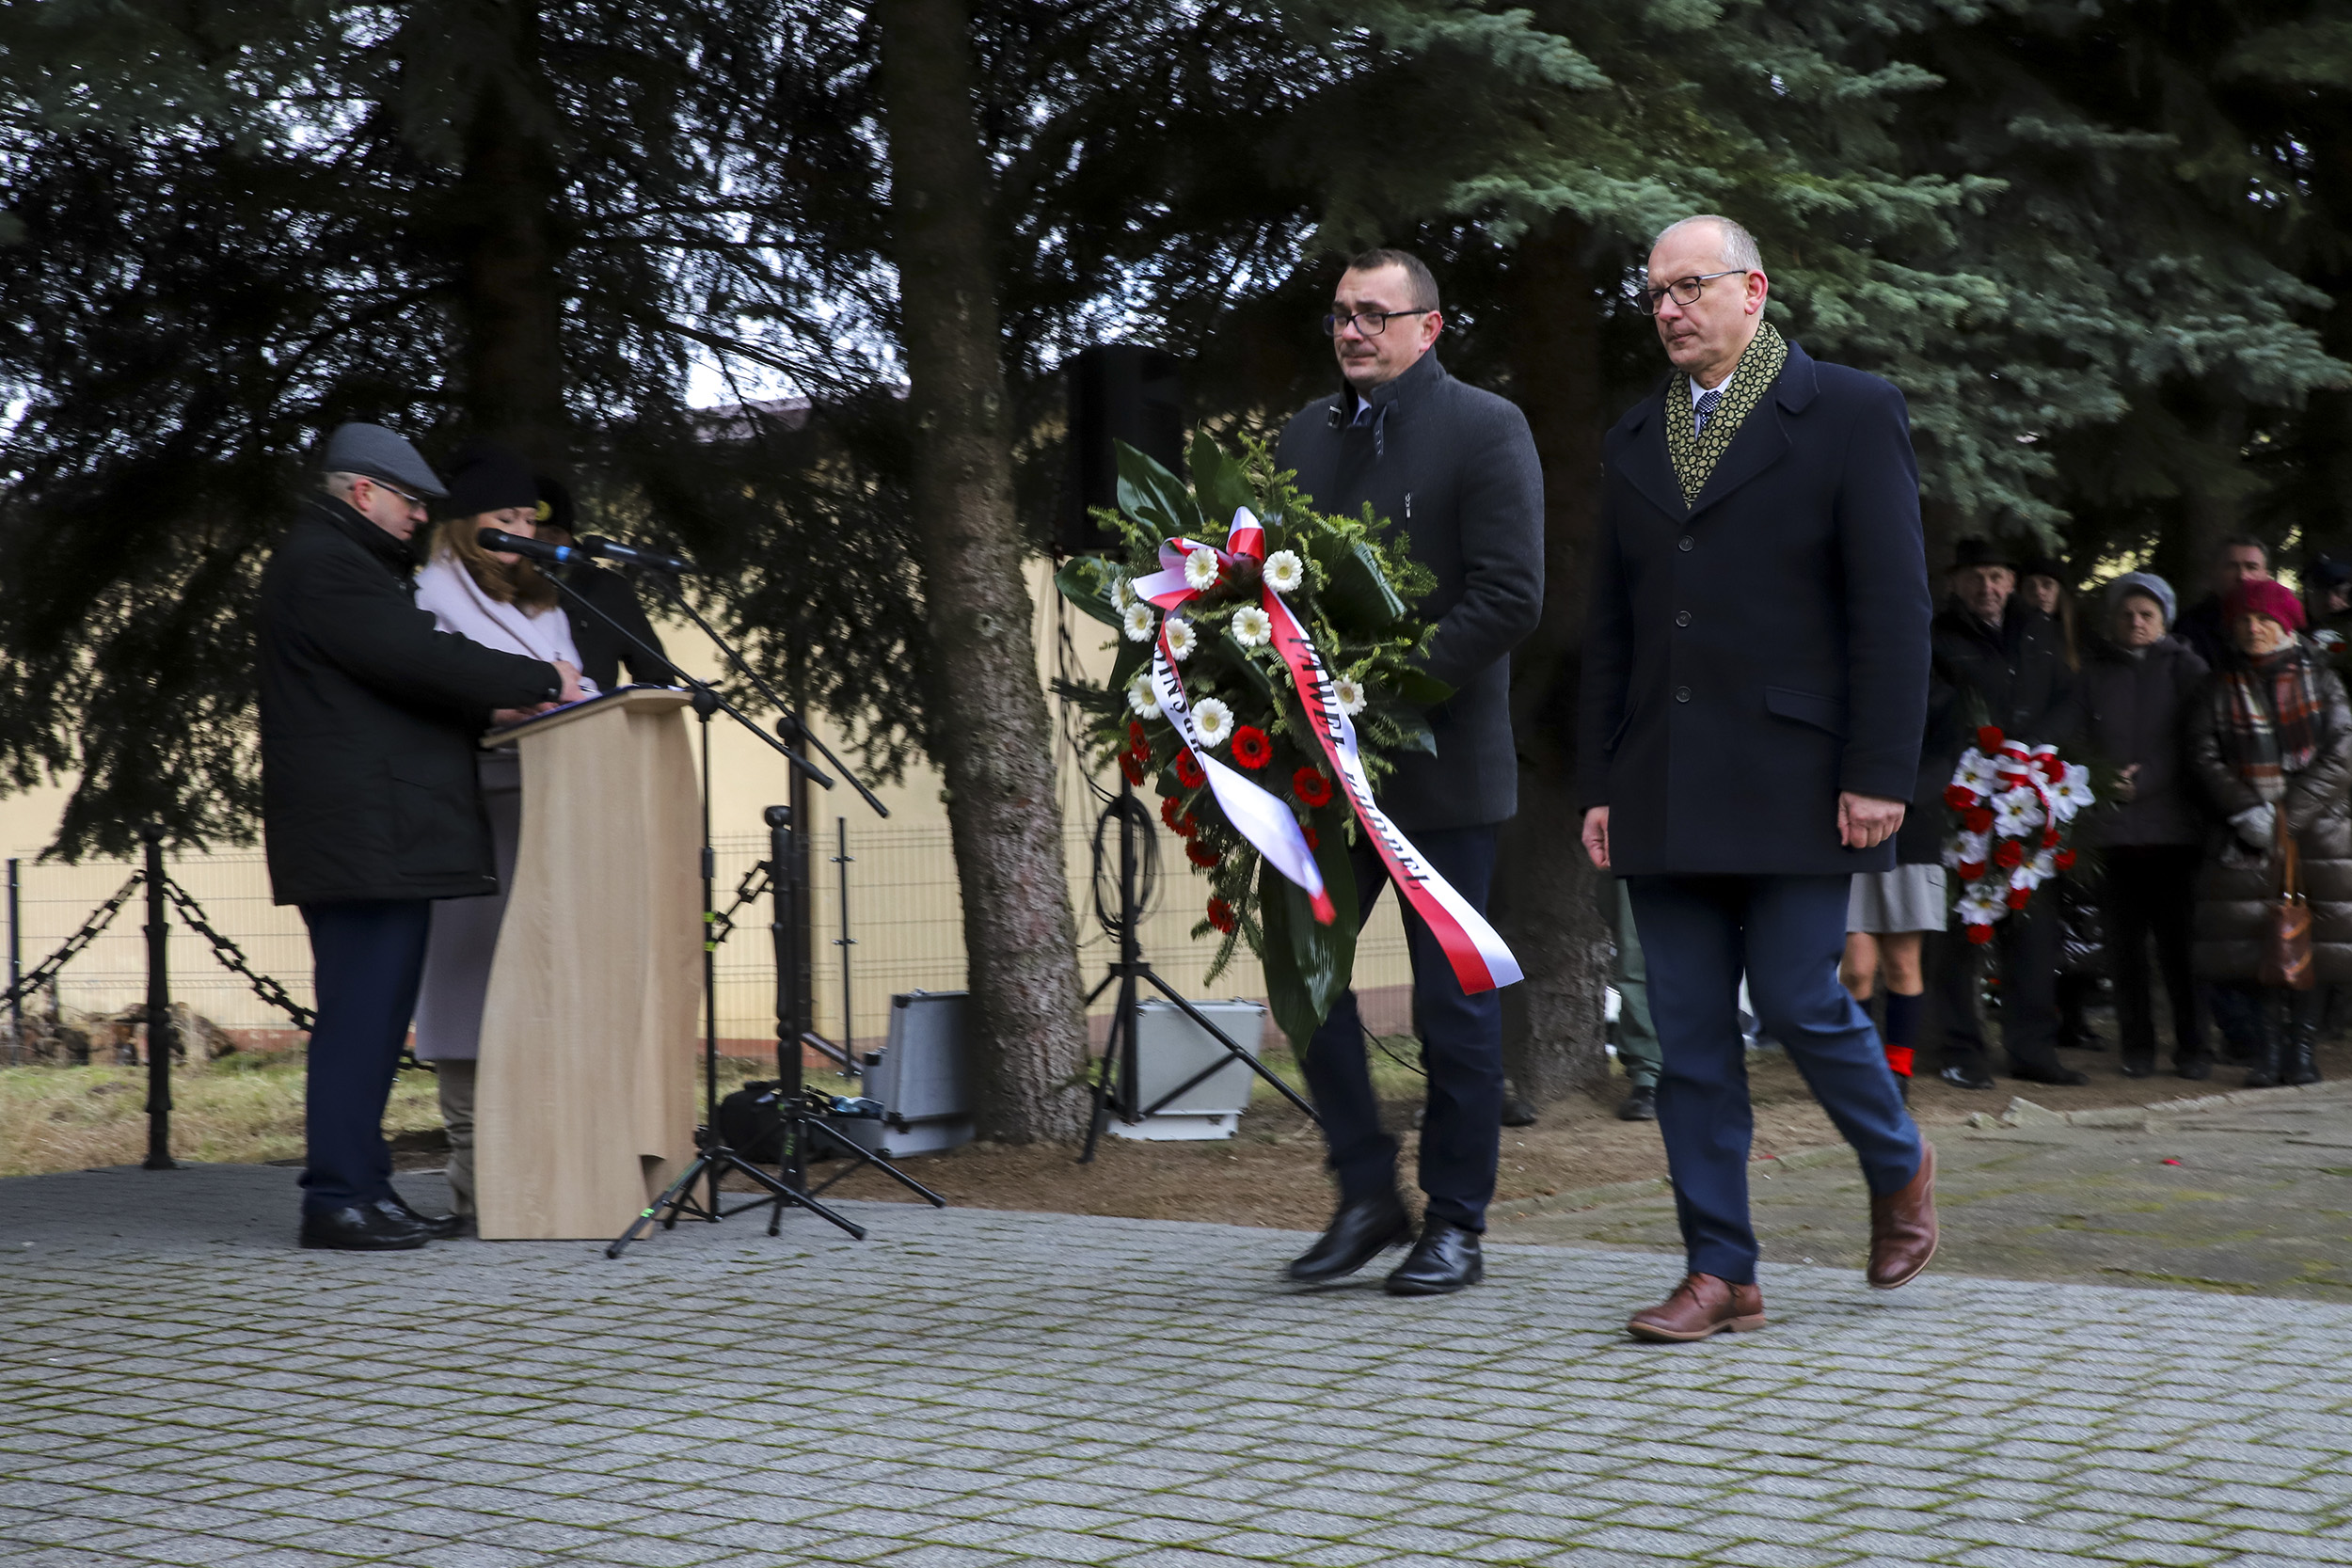 Zdjęcie przedstawia moment składania wieńców przy pomniku. Starosta Kraśnicki oraz Członek Zarządu zmierzają z wieńcem w kierunku pomnika. W tla za nimi znajdują się inni uczestnicy obchodów.